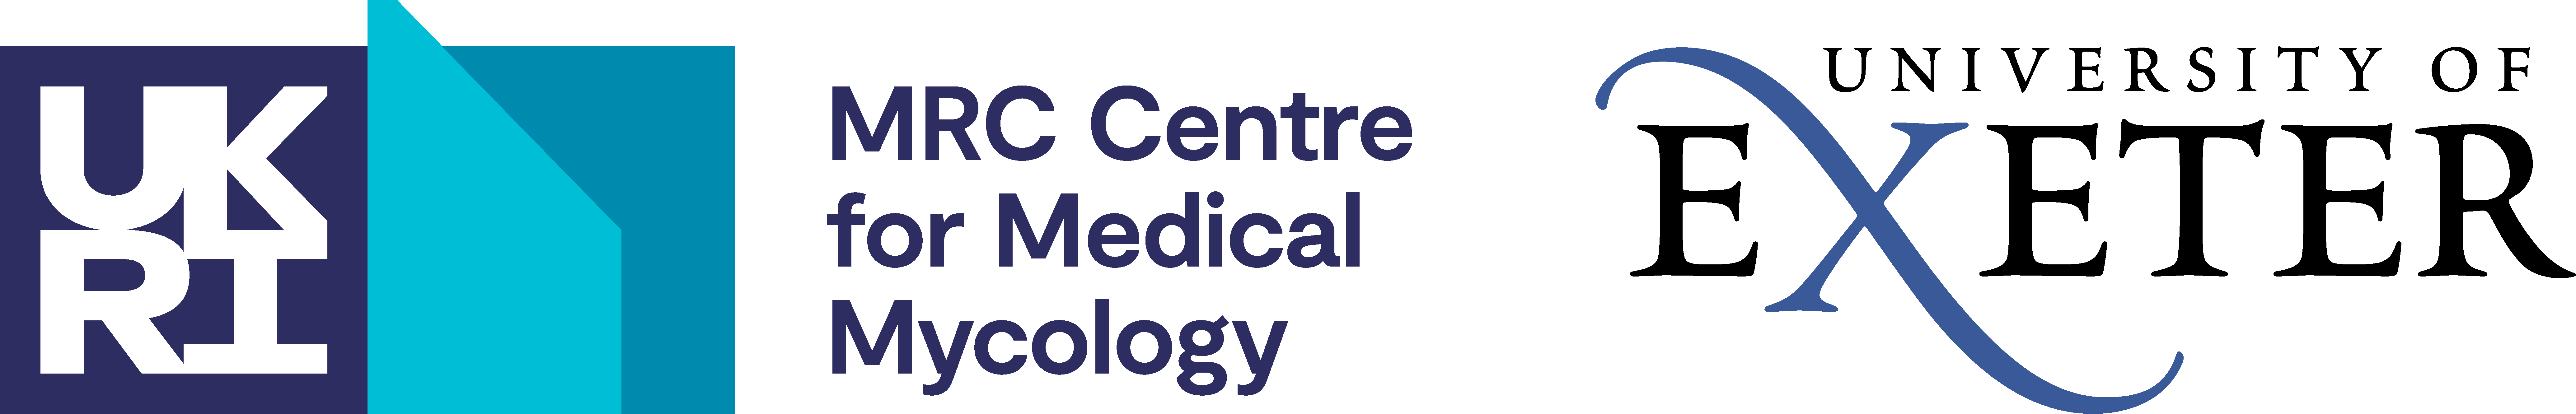 MRC Centre for Medical Mycology logo